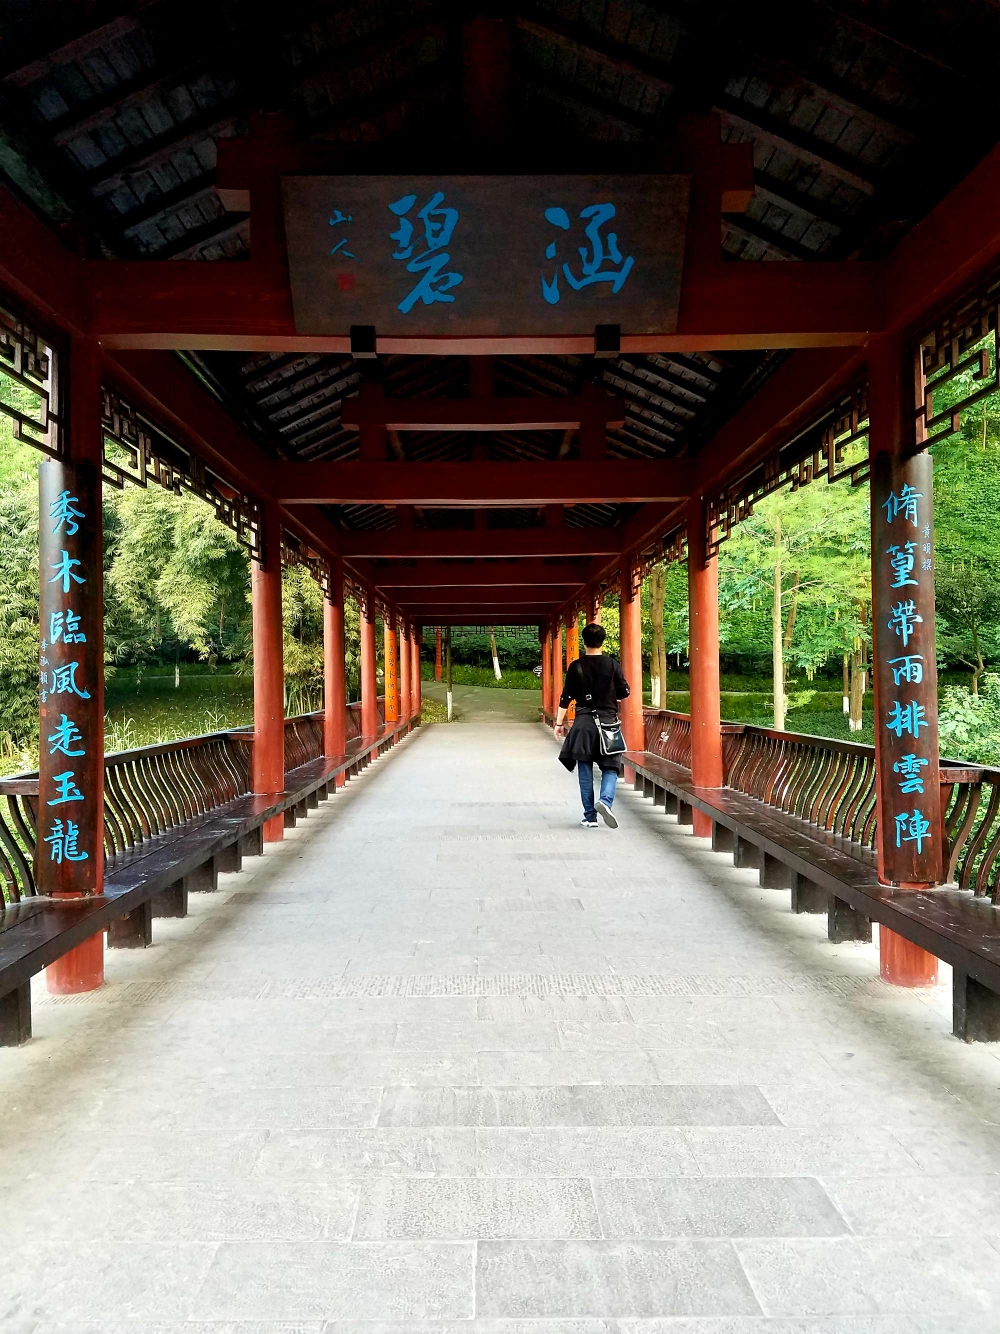 长长的跨湖廊桥,每段廊桥的柱子上都写有不同字体的对联,古色古香